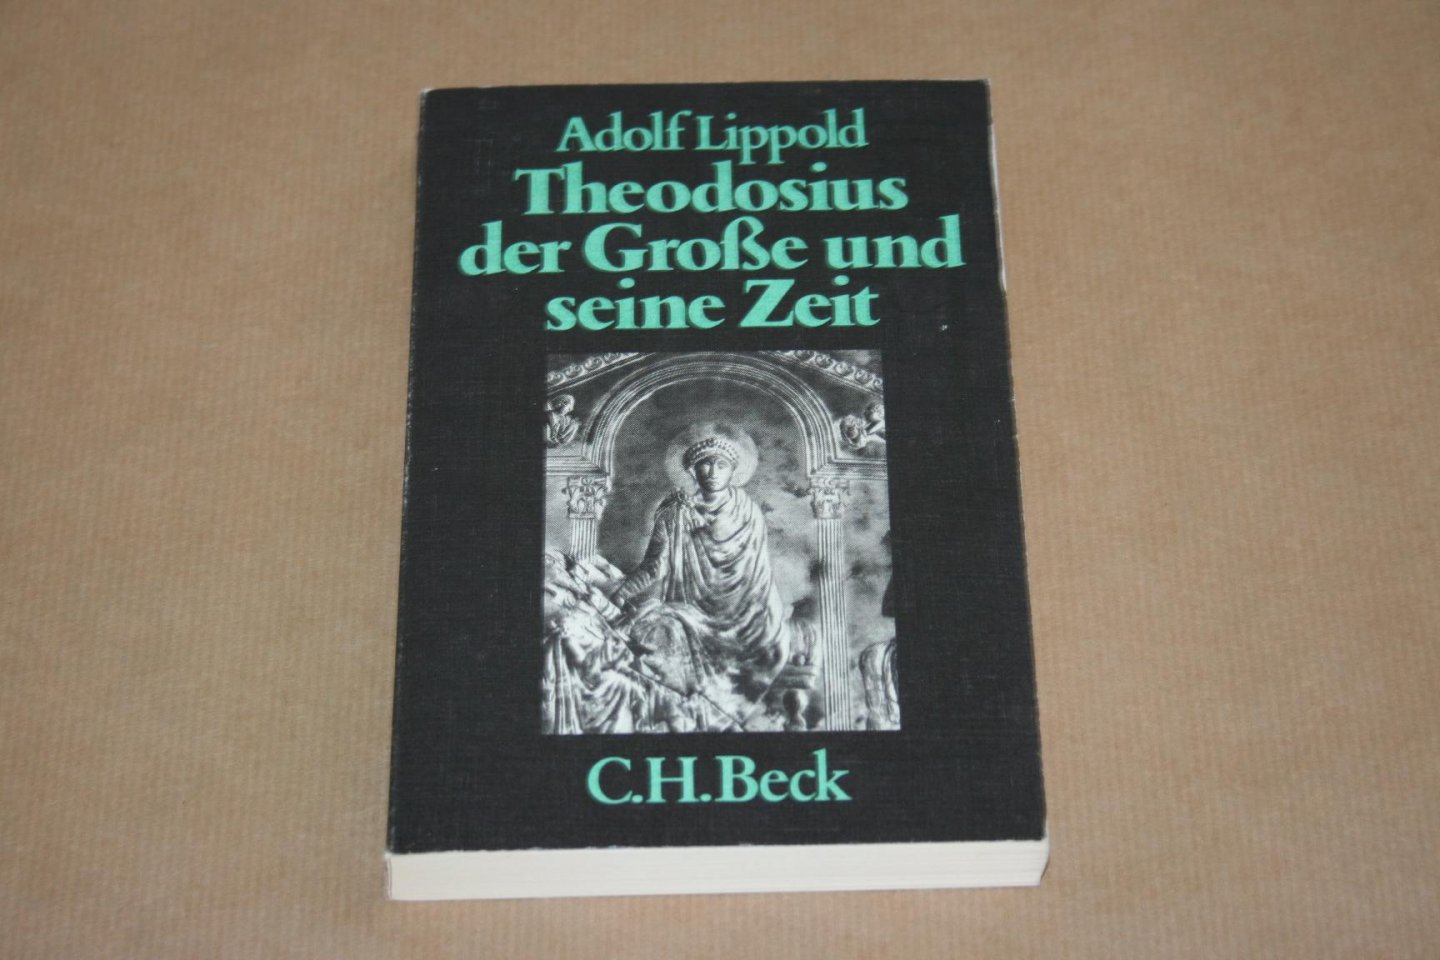 Adolf Lippold - Theodosius der Große und seine Zeit